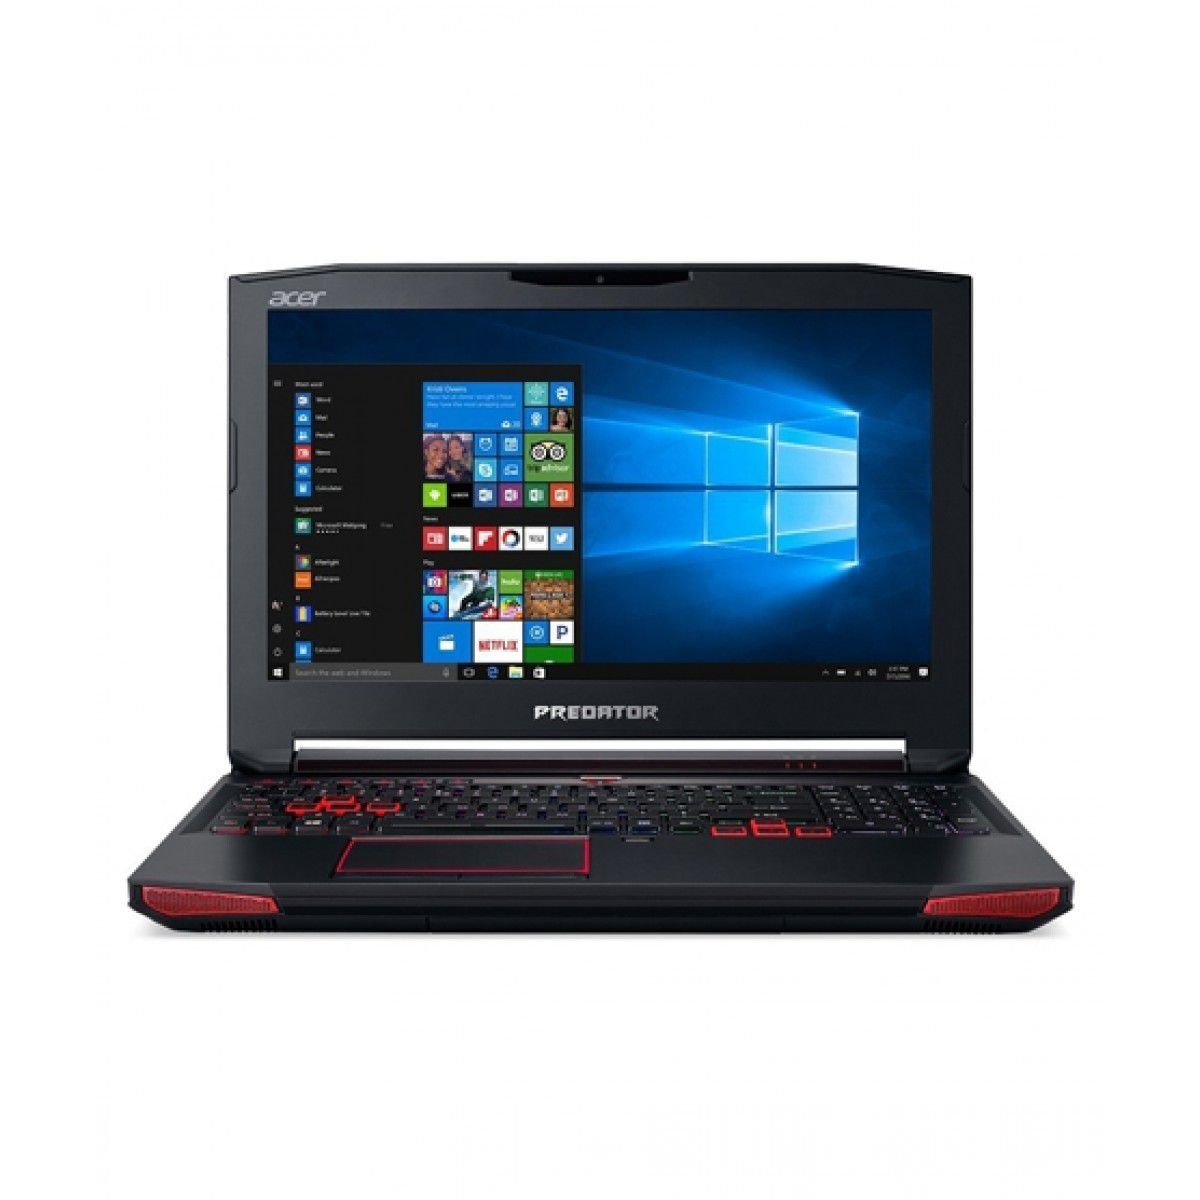 Acer Predator 15 Core i7 7th Gen Gaming Laptop (G9-593-73N6)